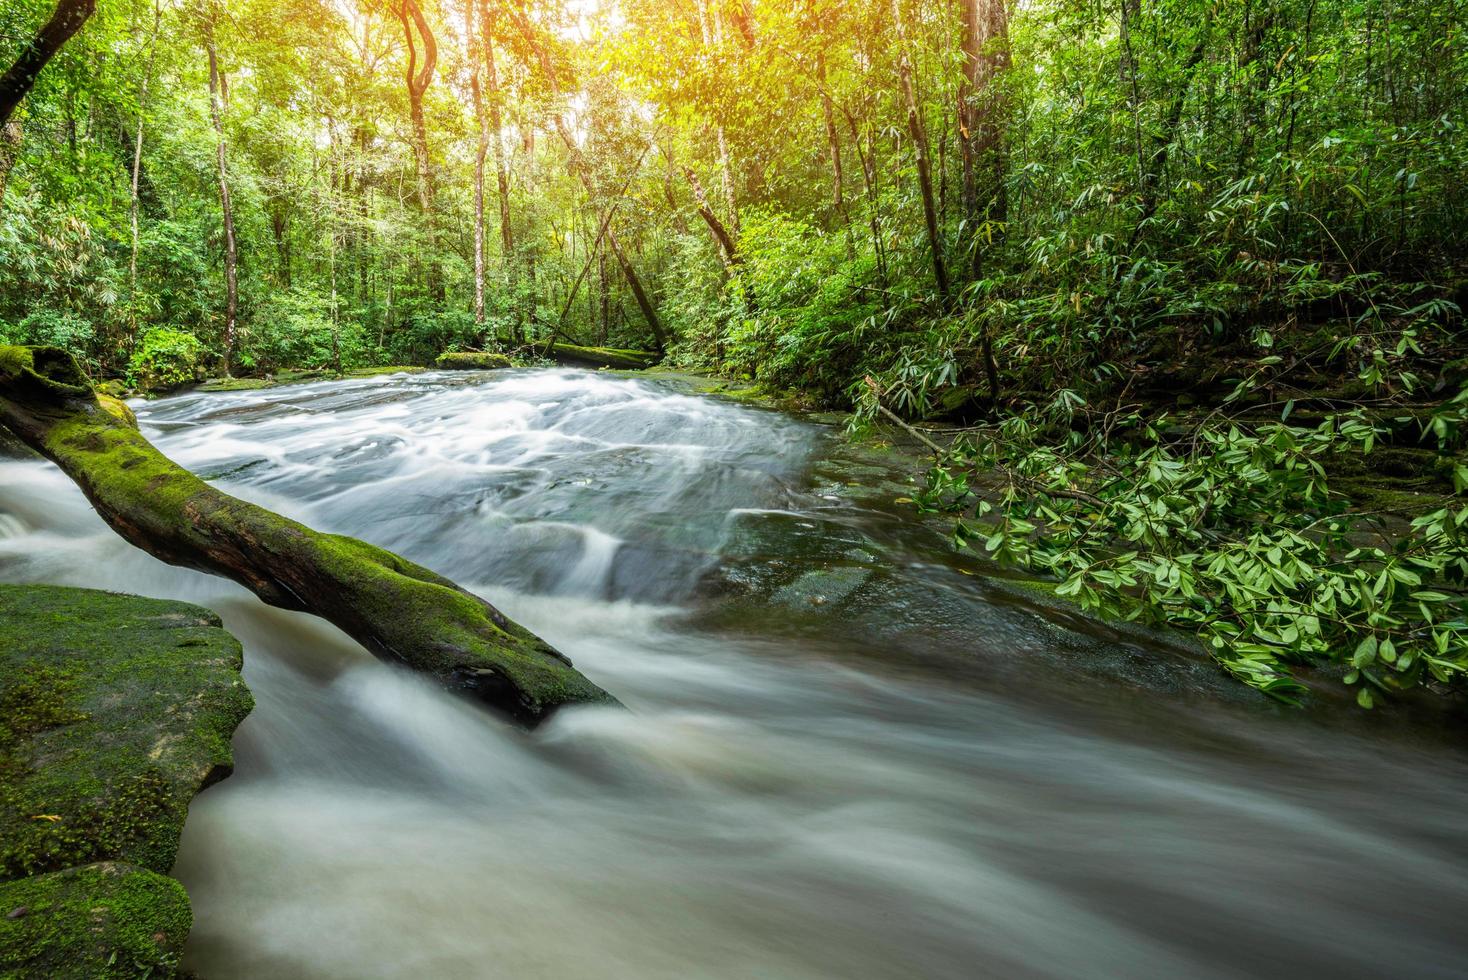 río corriente cascada verde bosque montaña paisaje naturaleza planta árbol selva selva con roca foto